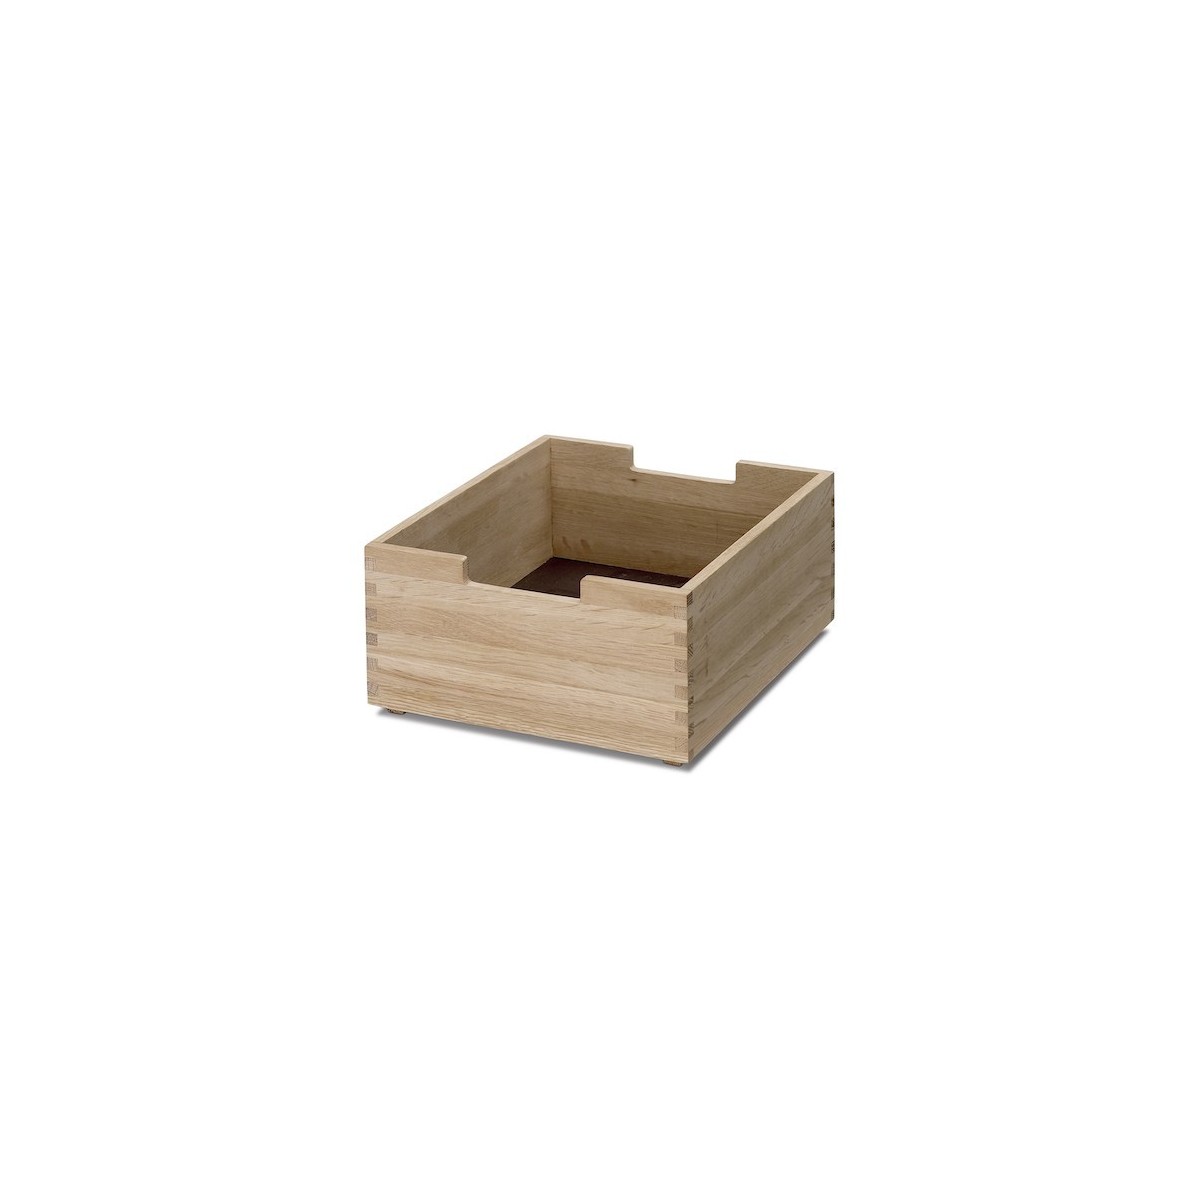 oak - Cutter box, low